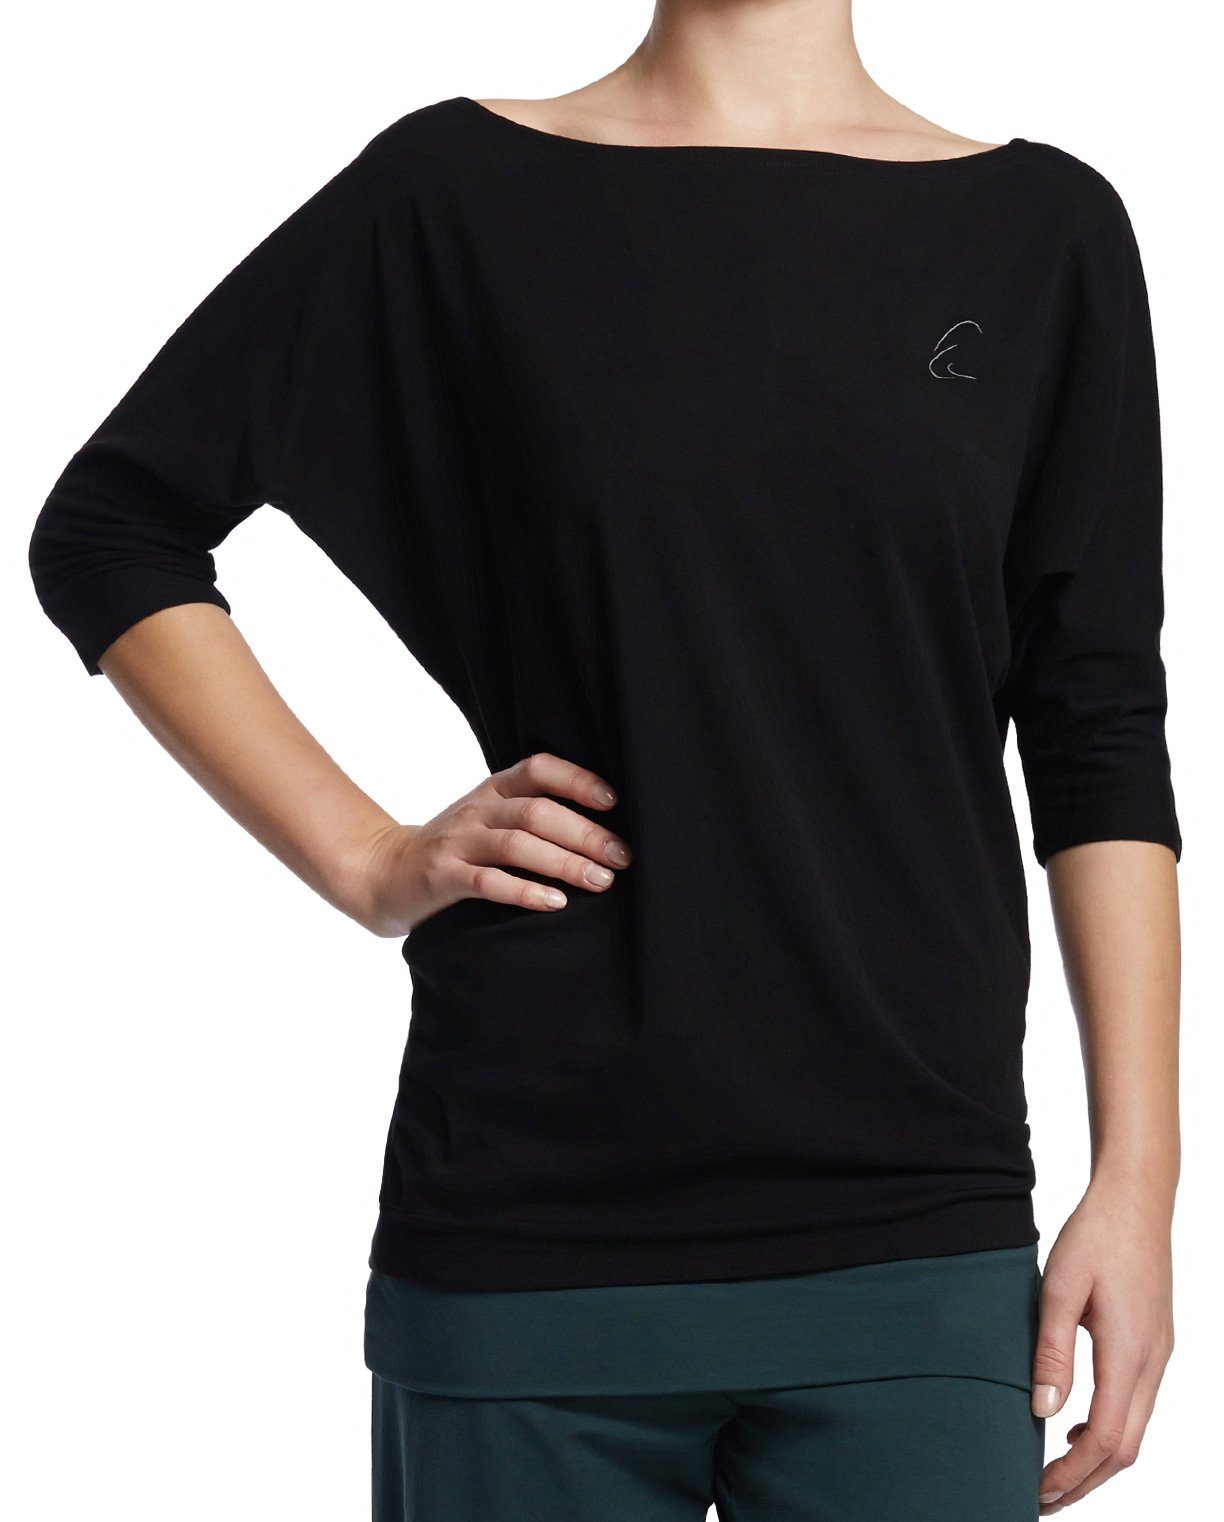 ESPARTO Yogashirt Halbarmshirt Sadaa in Bio-Baumwolle Wohlfühlshirt mit breitem Schulterausschnitt (U-Boot-Ausschnitt) Schwarz | Sportshirts